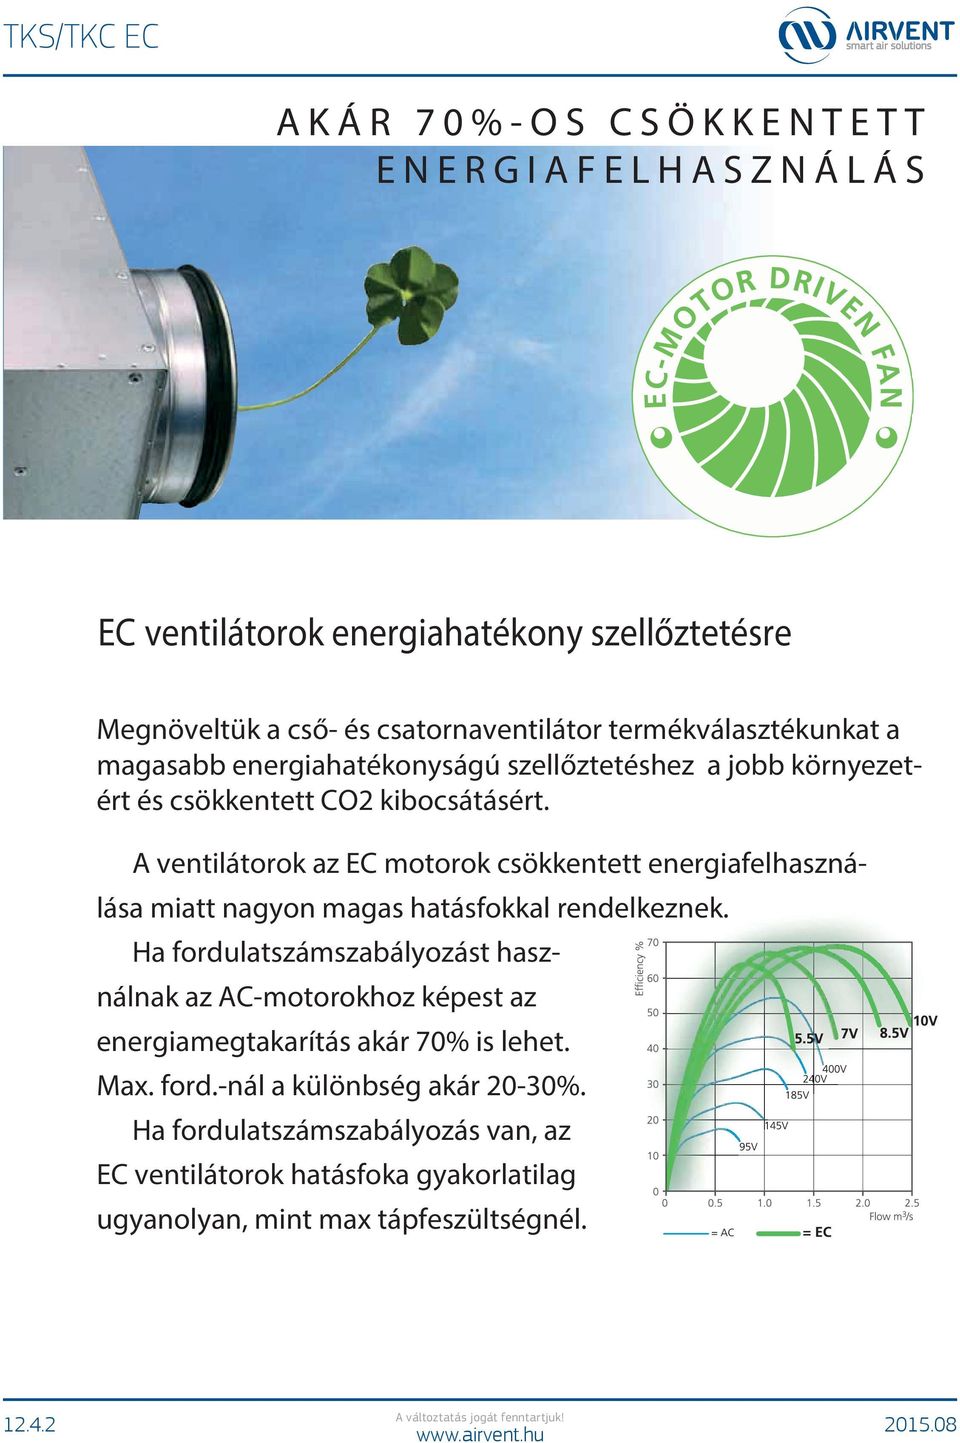 A ventilátorok az EC motorok csökkentett energiafelhasználása miatt nagyon magas hatásfokkal rendelkeznek.